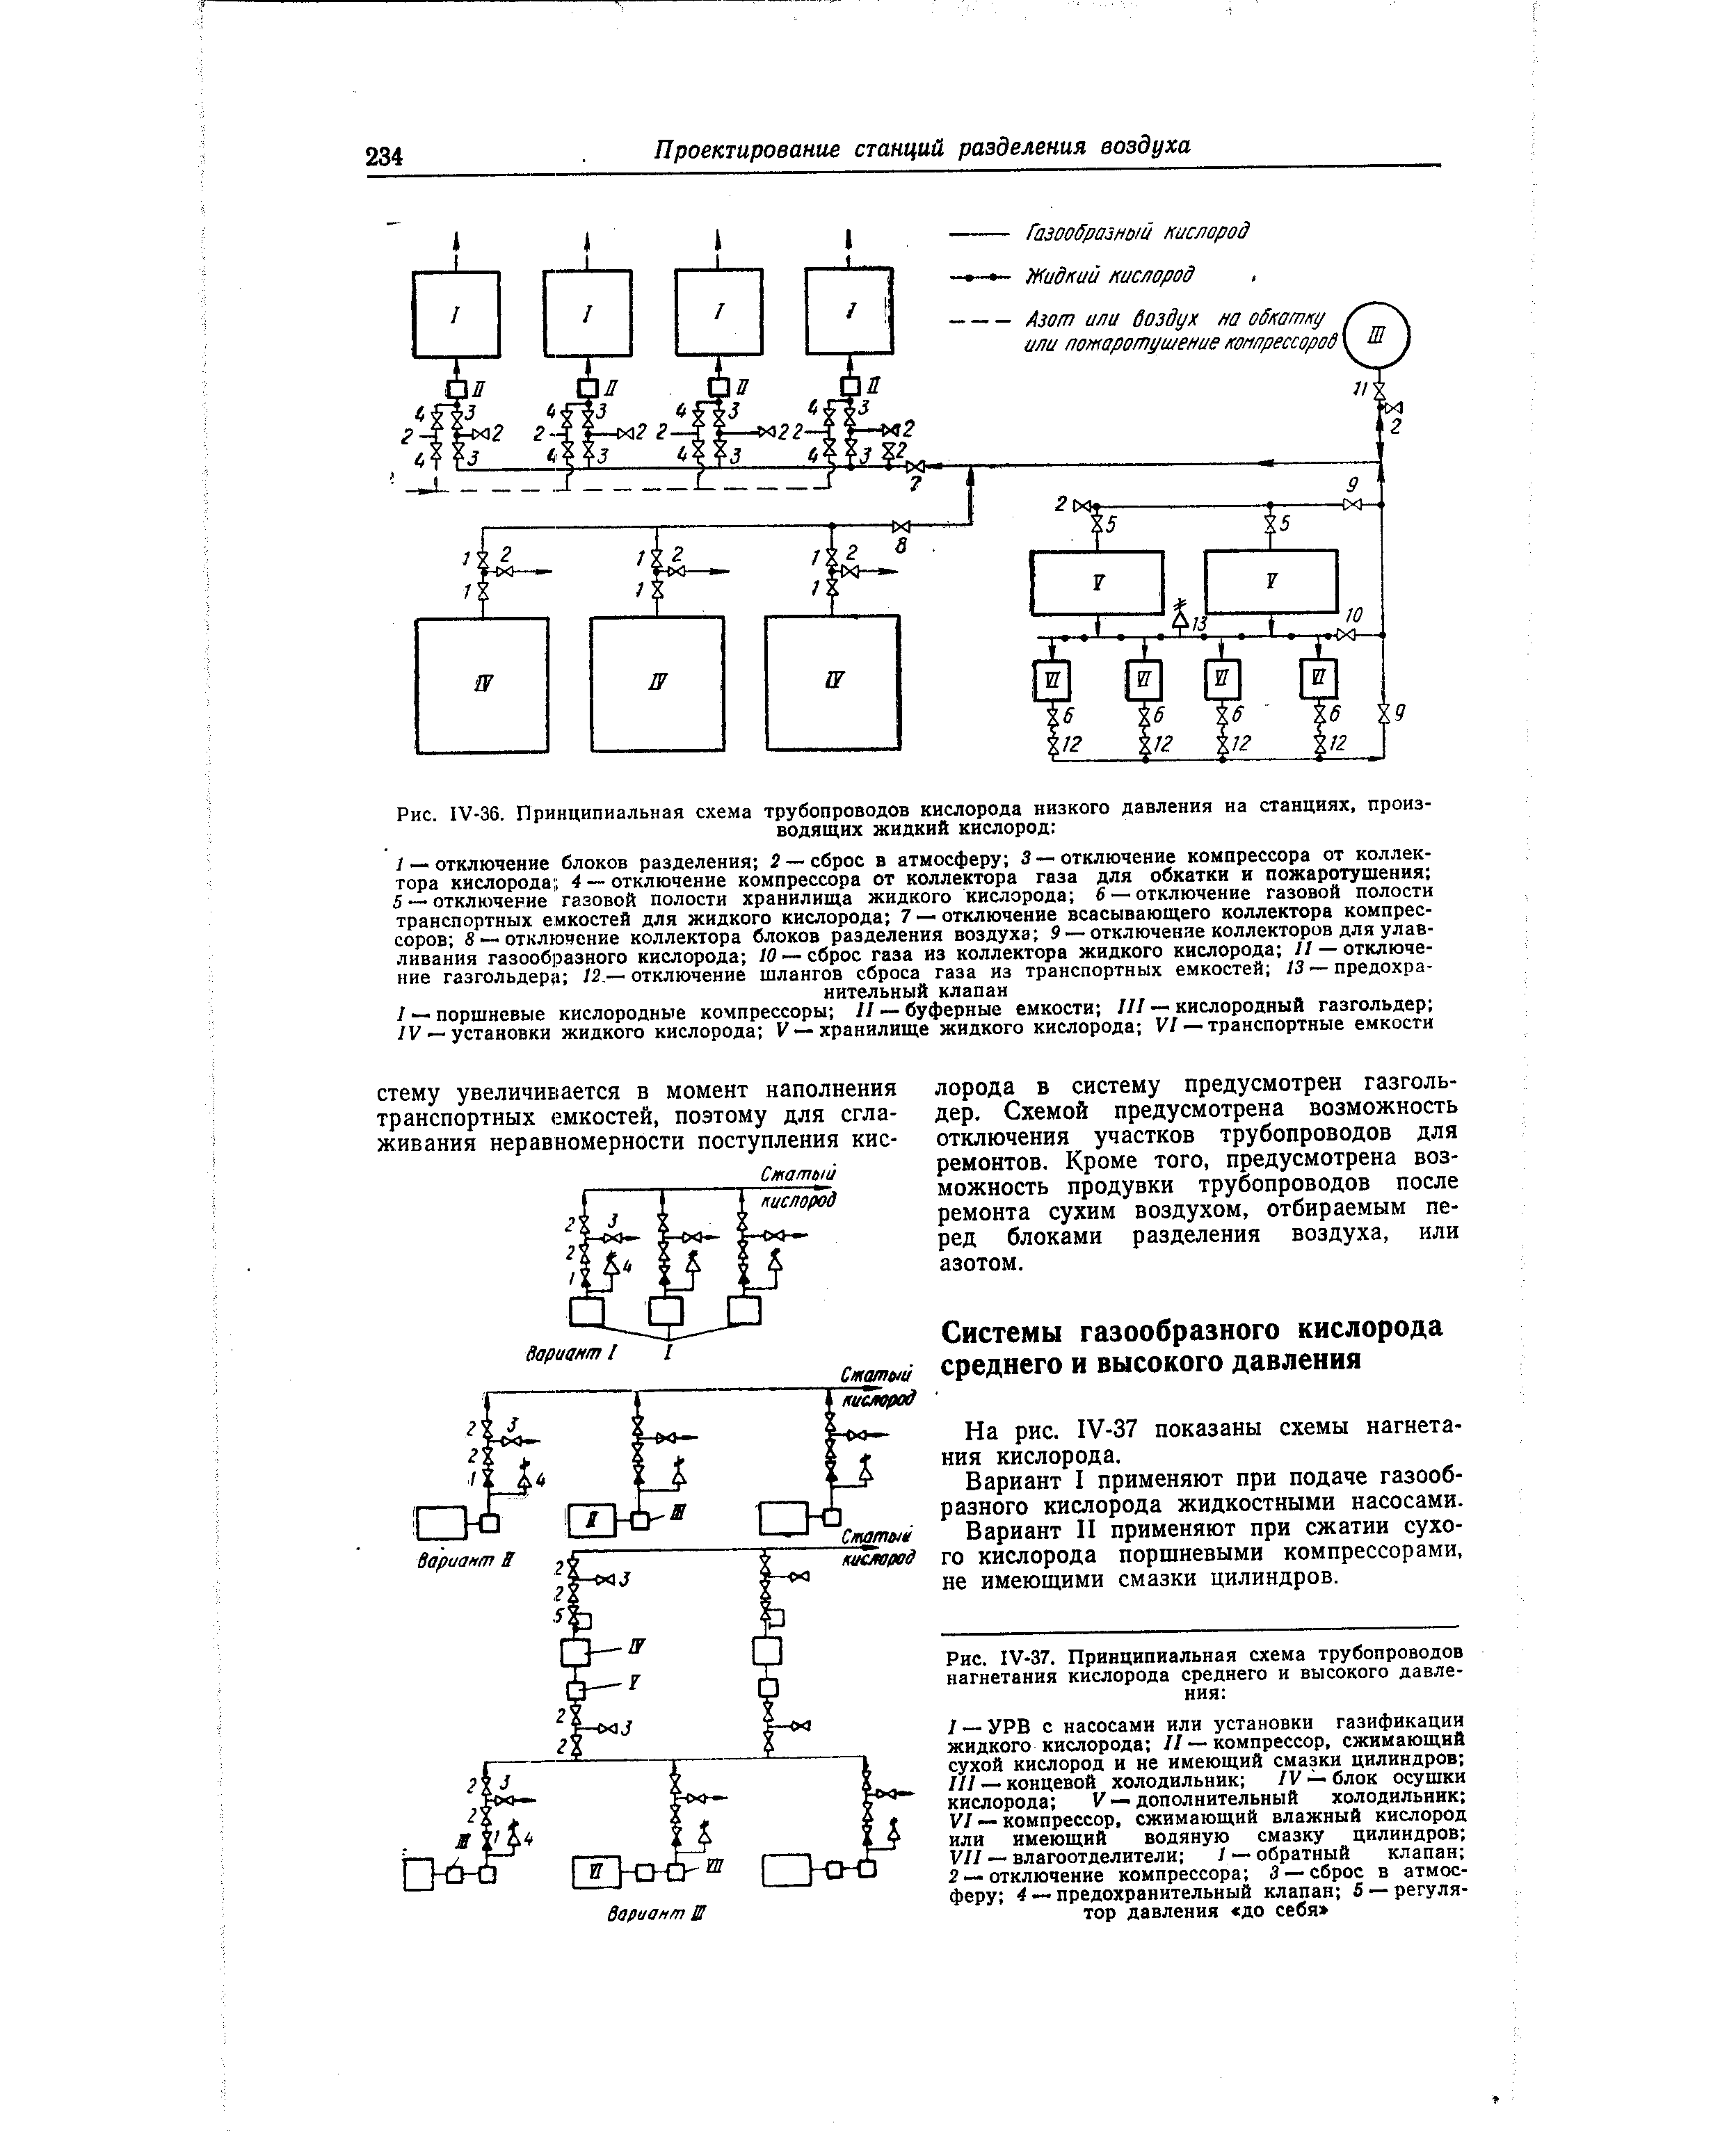 На рис. 1У-37 показаны схемы нагнетания кислорода.